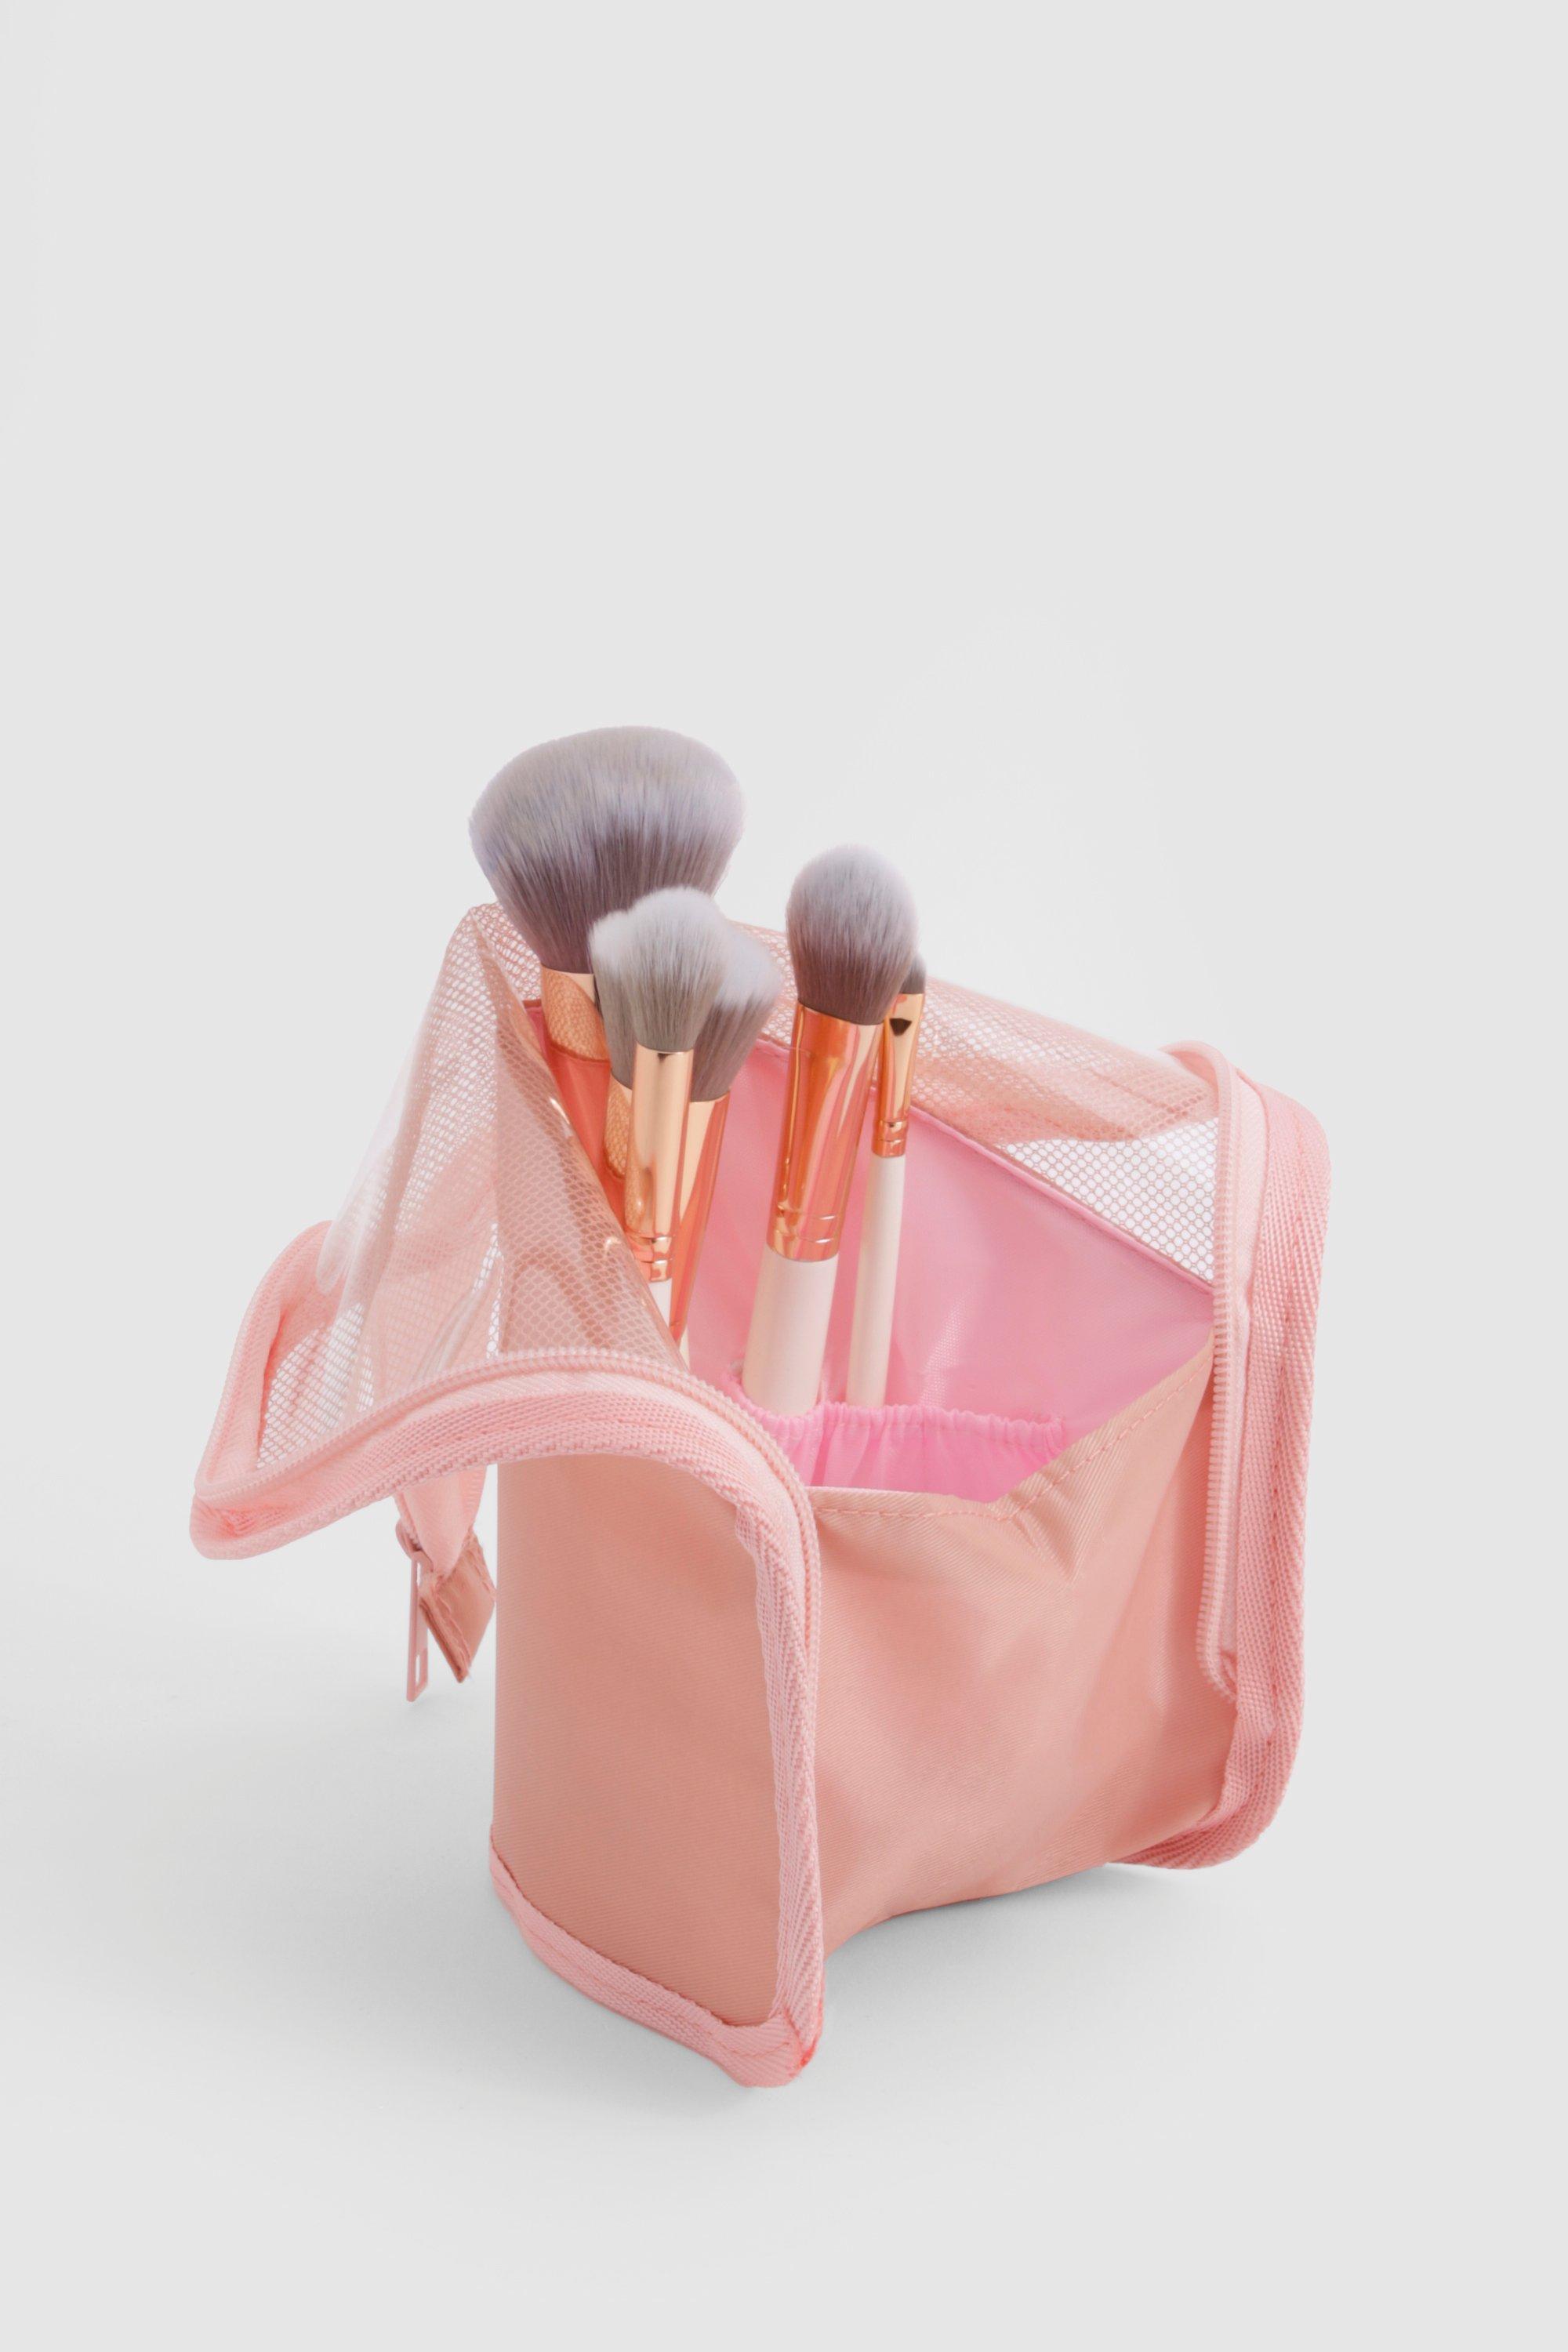 Image of Makeup Brush Travel Organiser, Pink